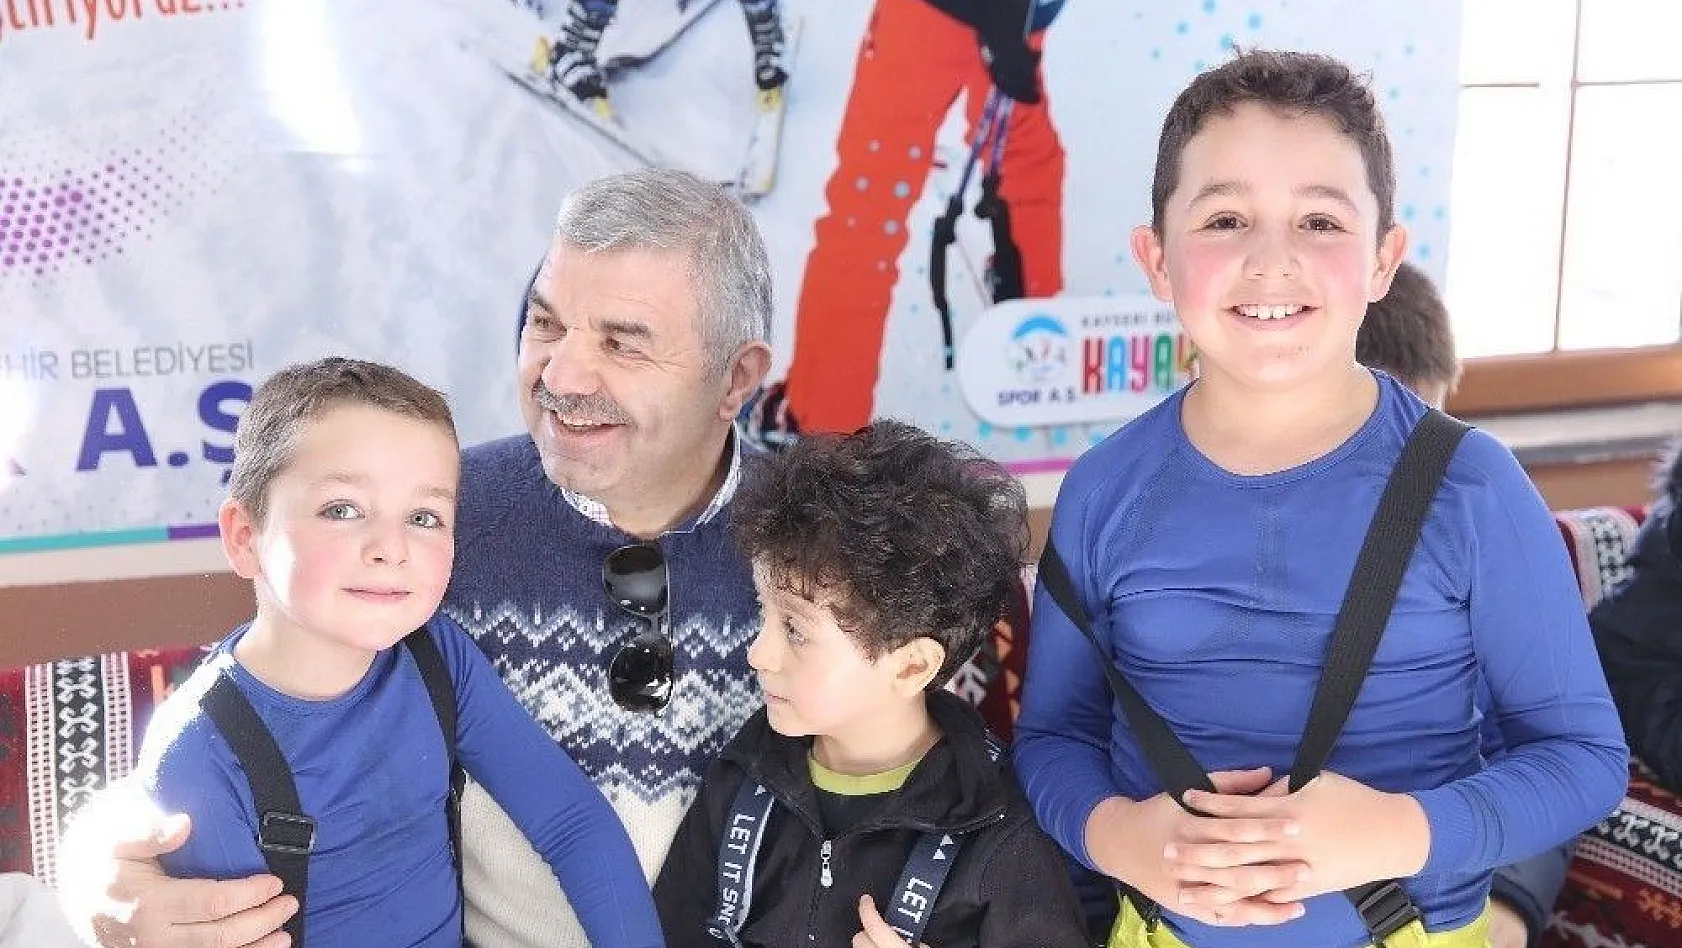 Türkiye'nin en büyük kayak okulu